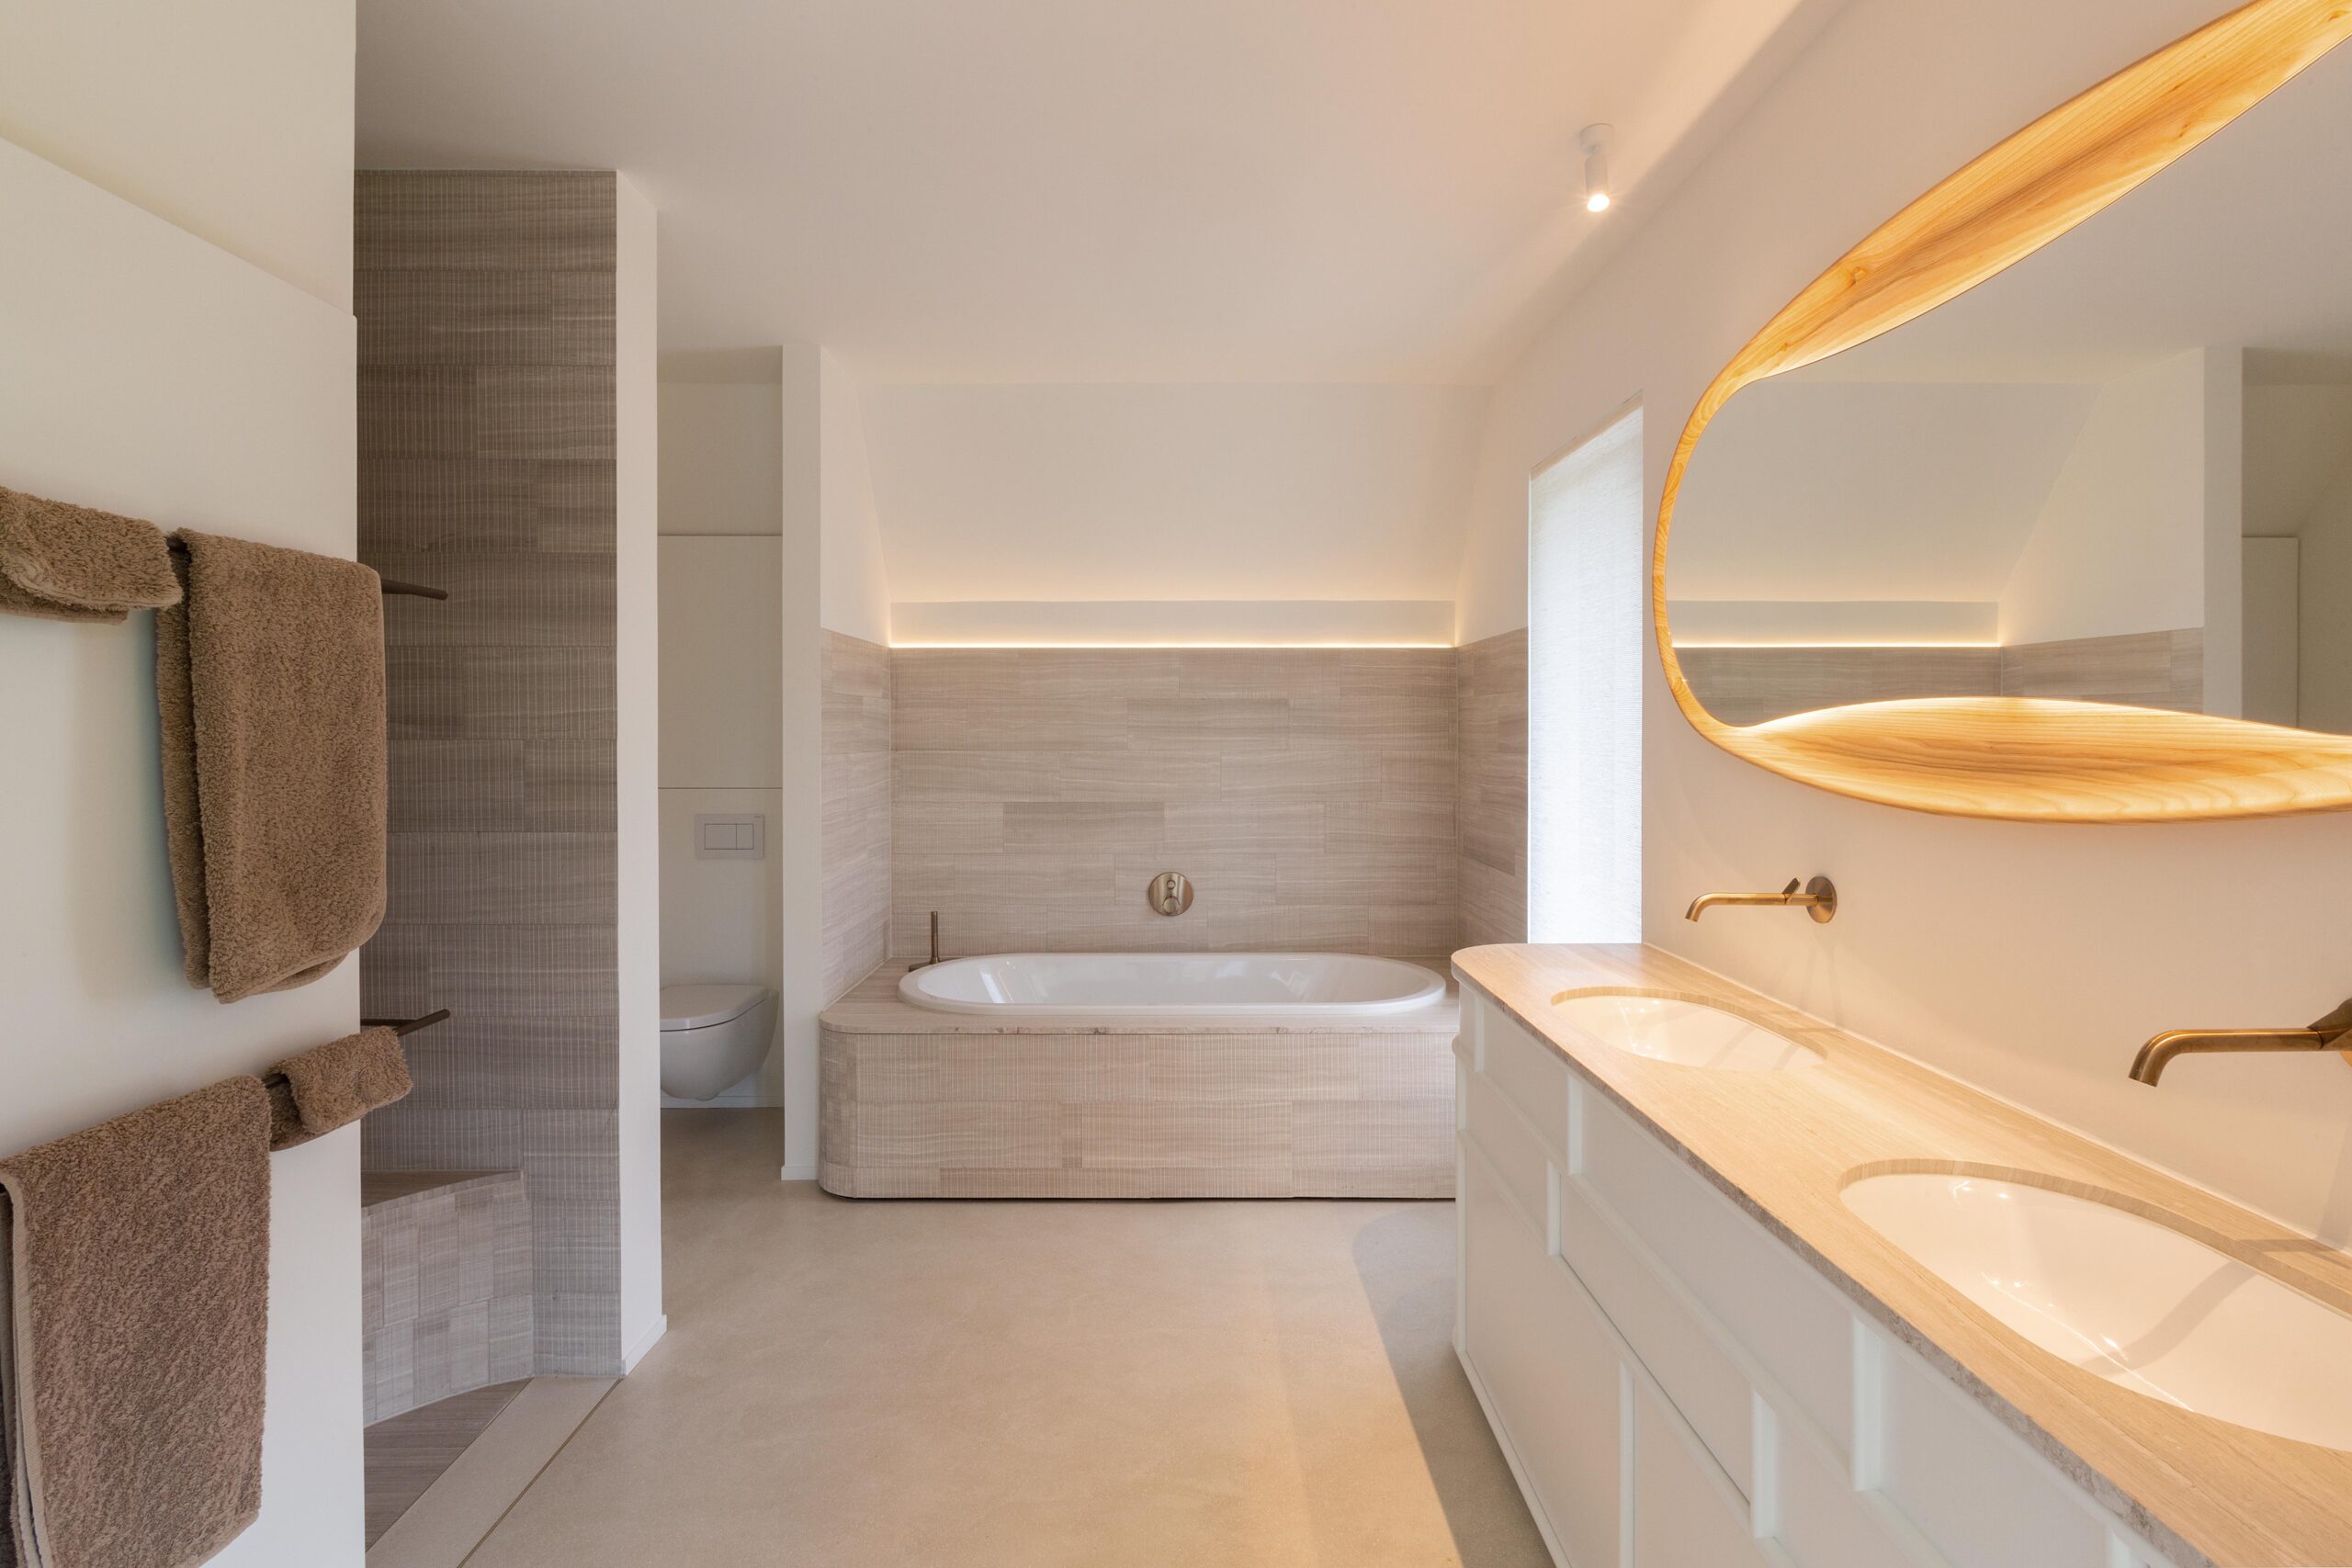 Een elegante badkamer met een unieke spiegel, ingebouwd bad en warme verlichting.